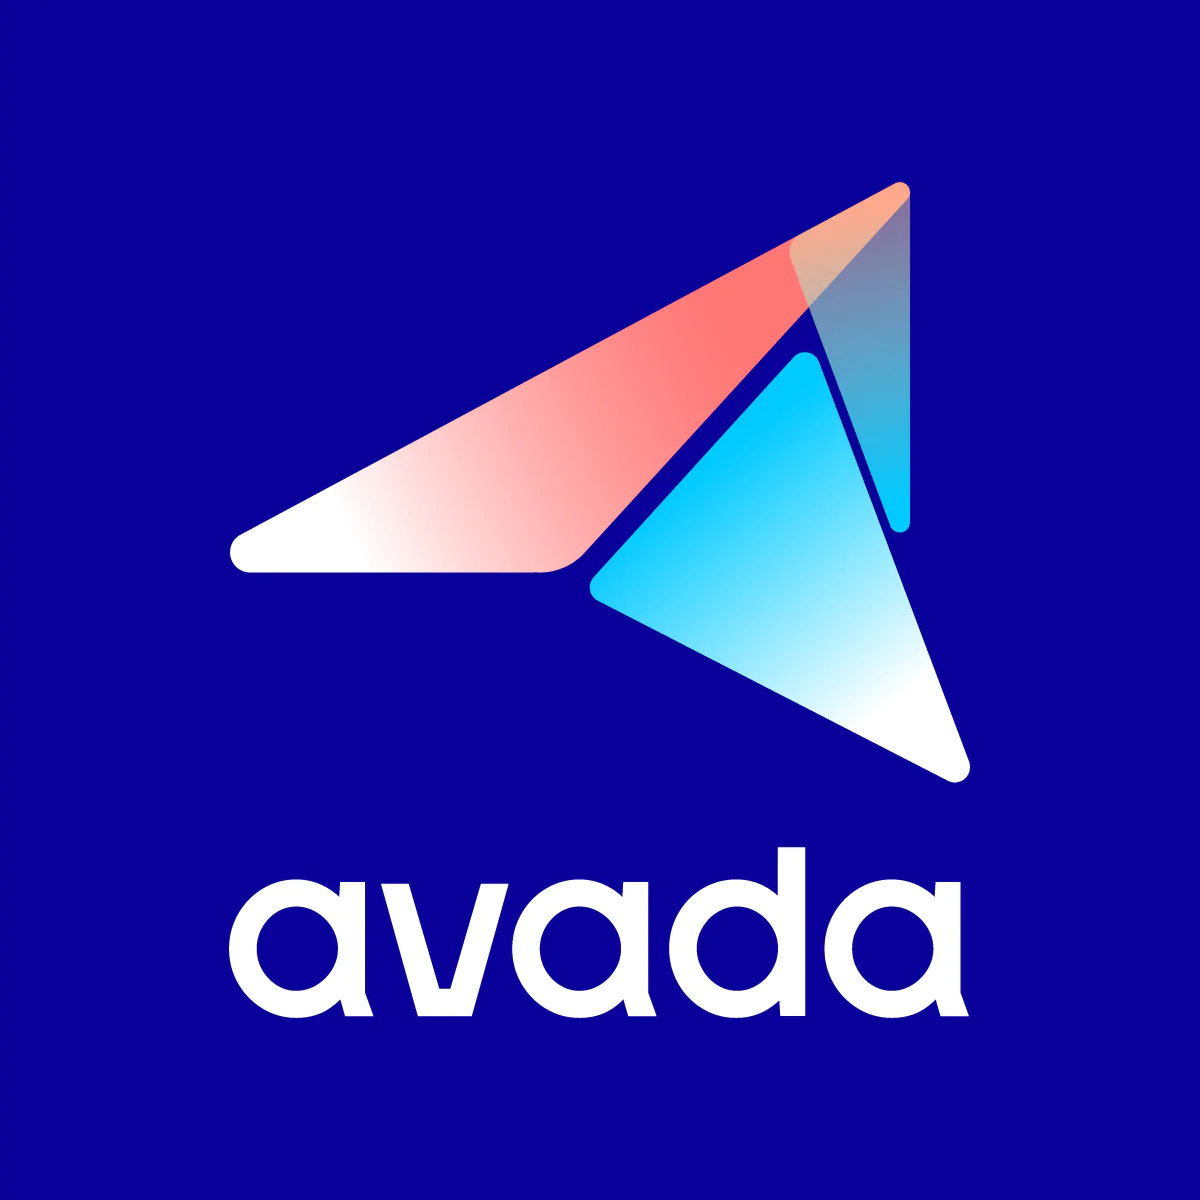 Avada للتسويق عبر البريد الإلكتروني والرسائل النصية القصيرة